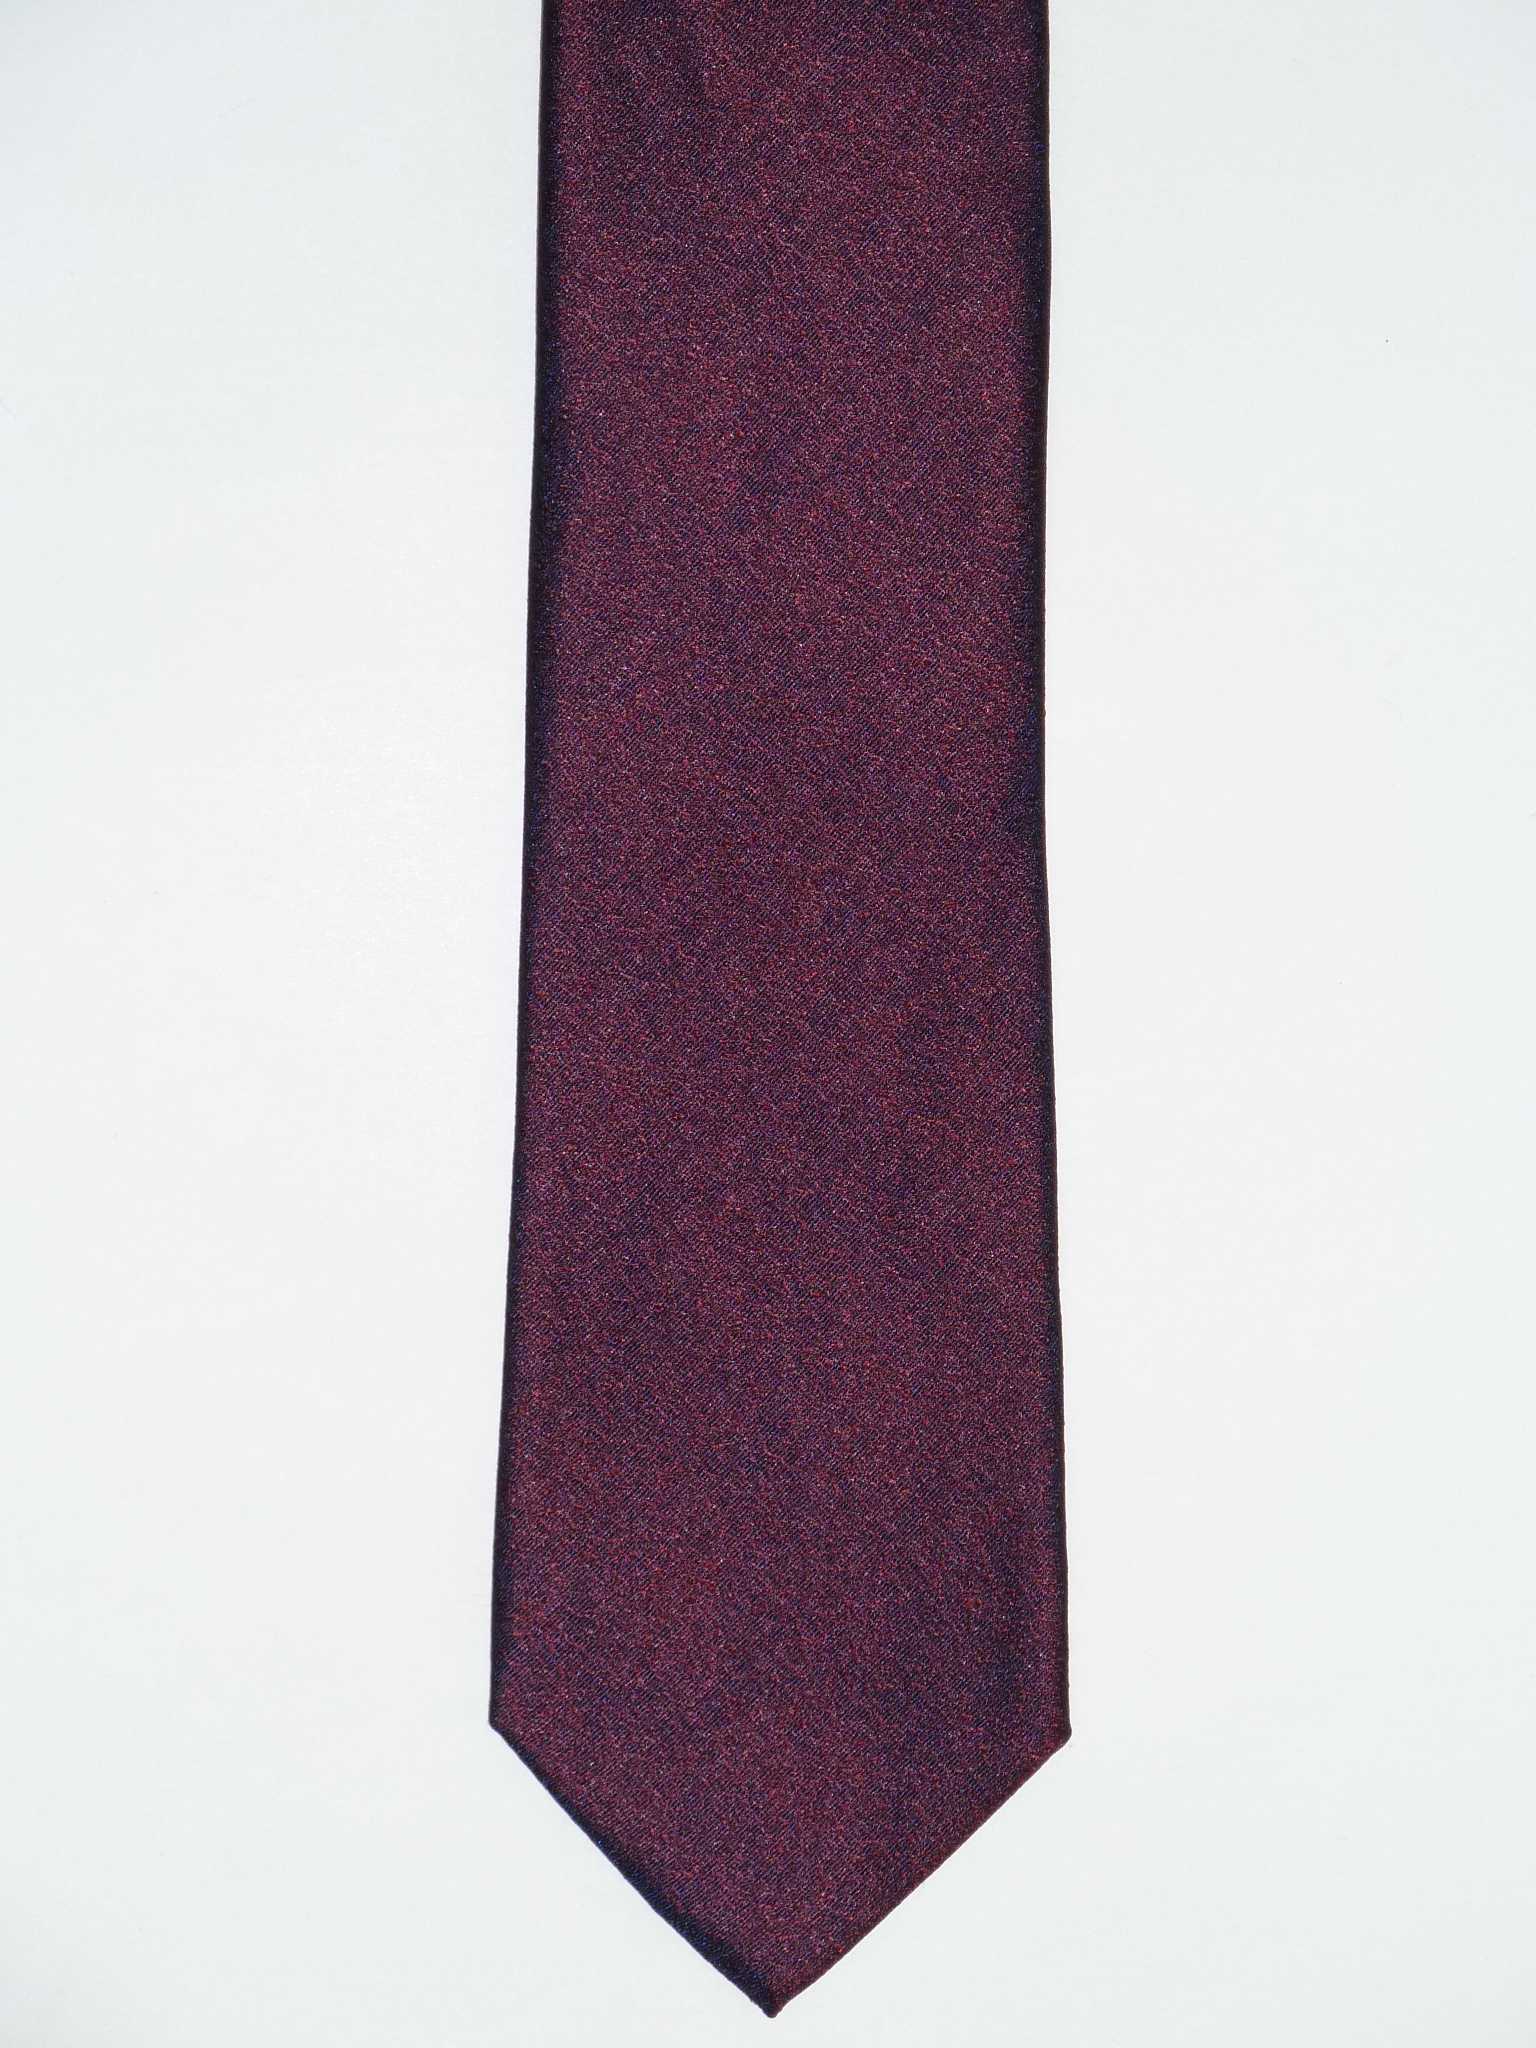 Krawatte, 100% Seide, 7,5cm, offene Struktur, Bordeaux – MAICA  Krawattenfabrik